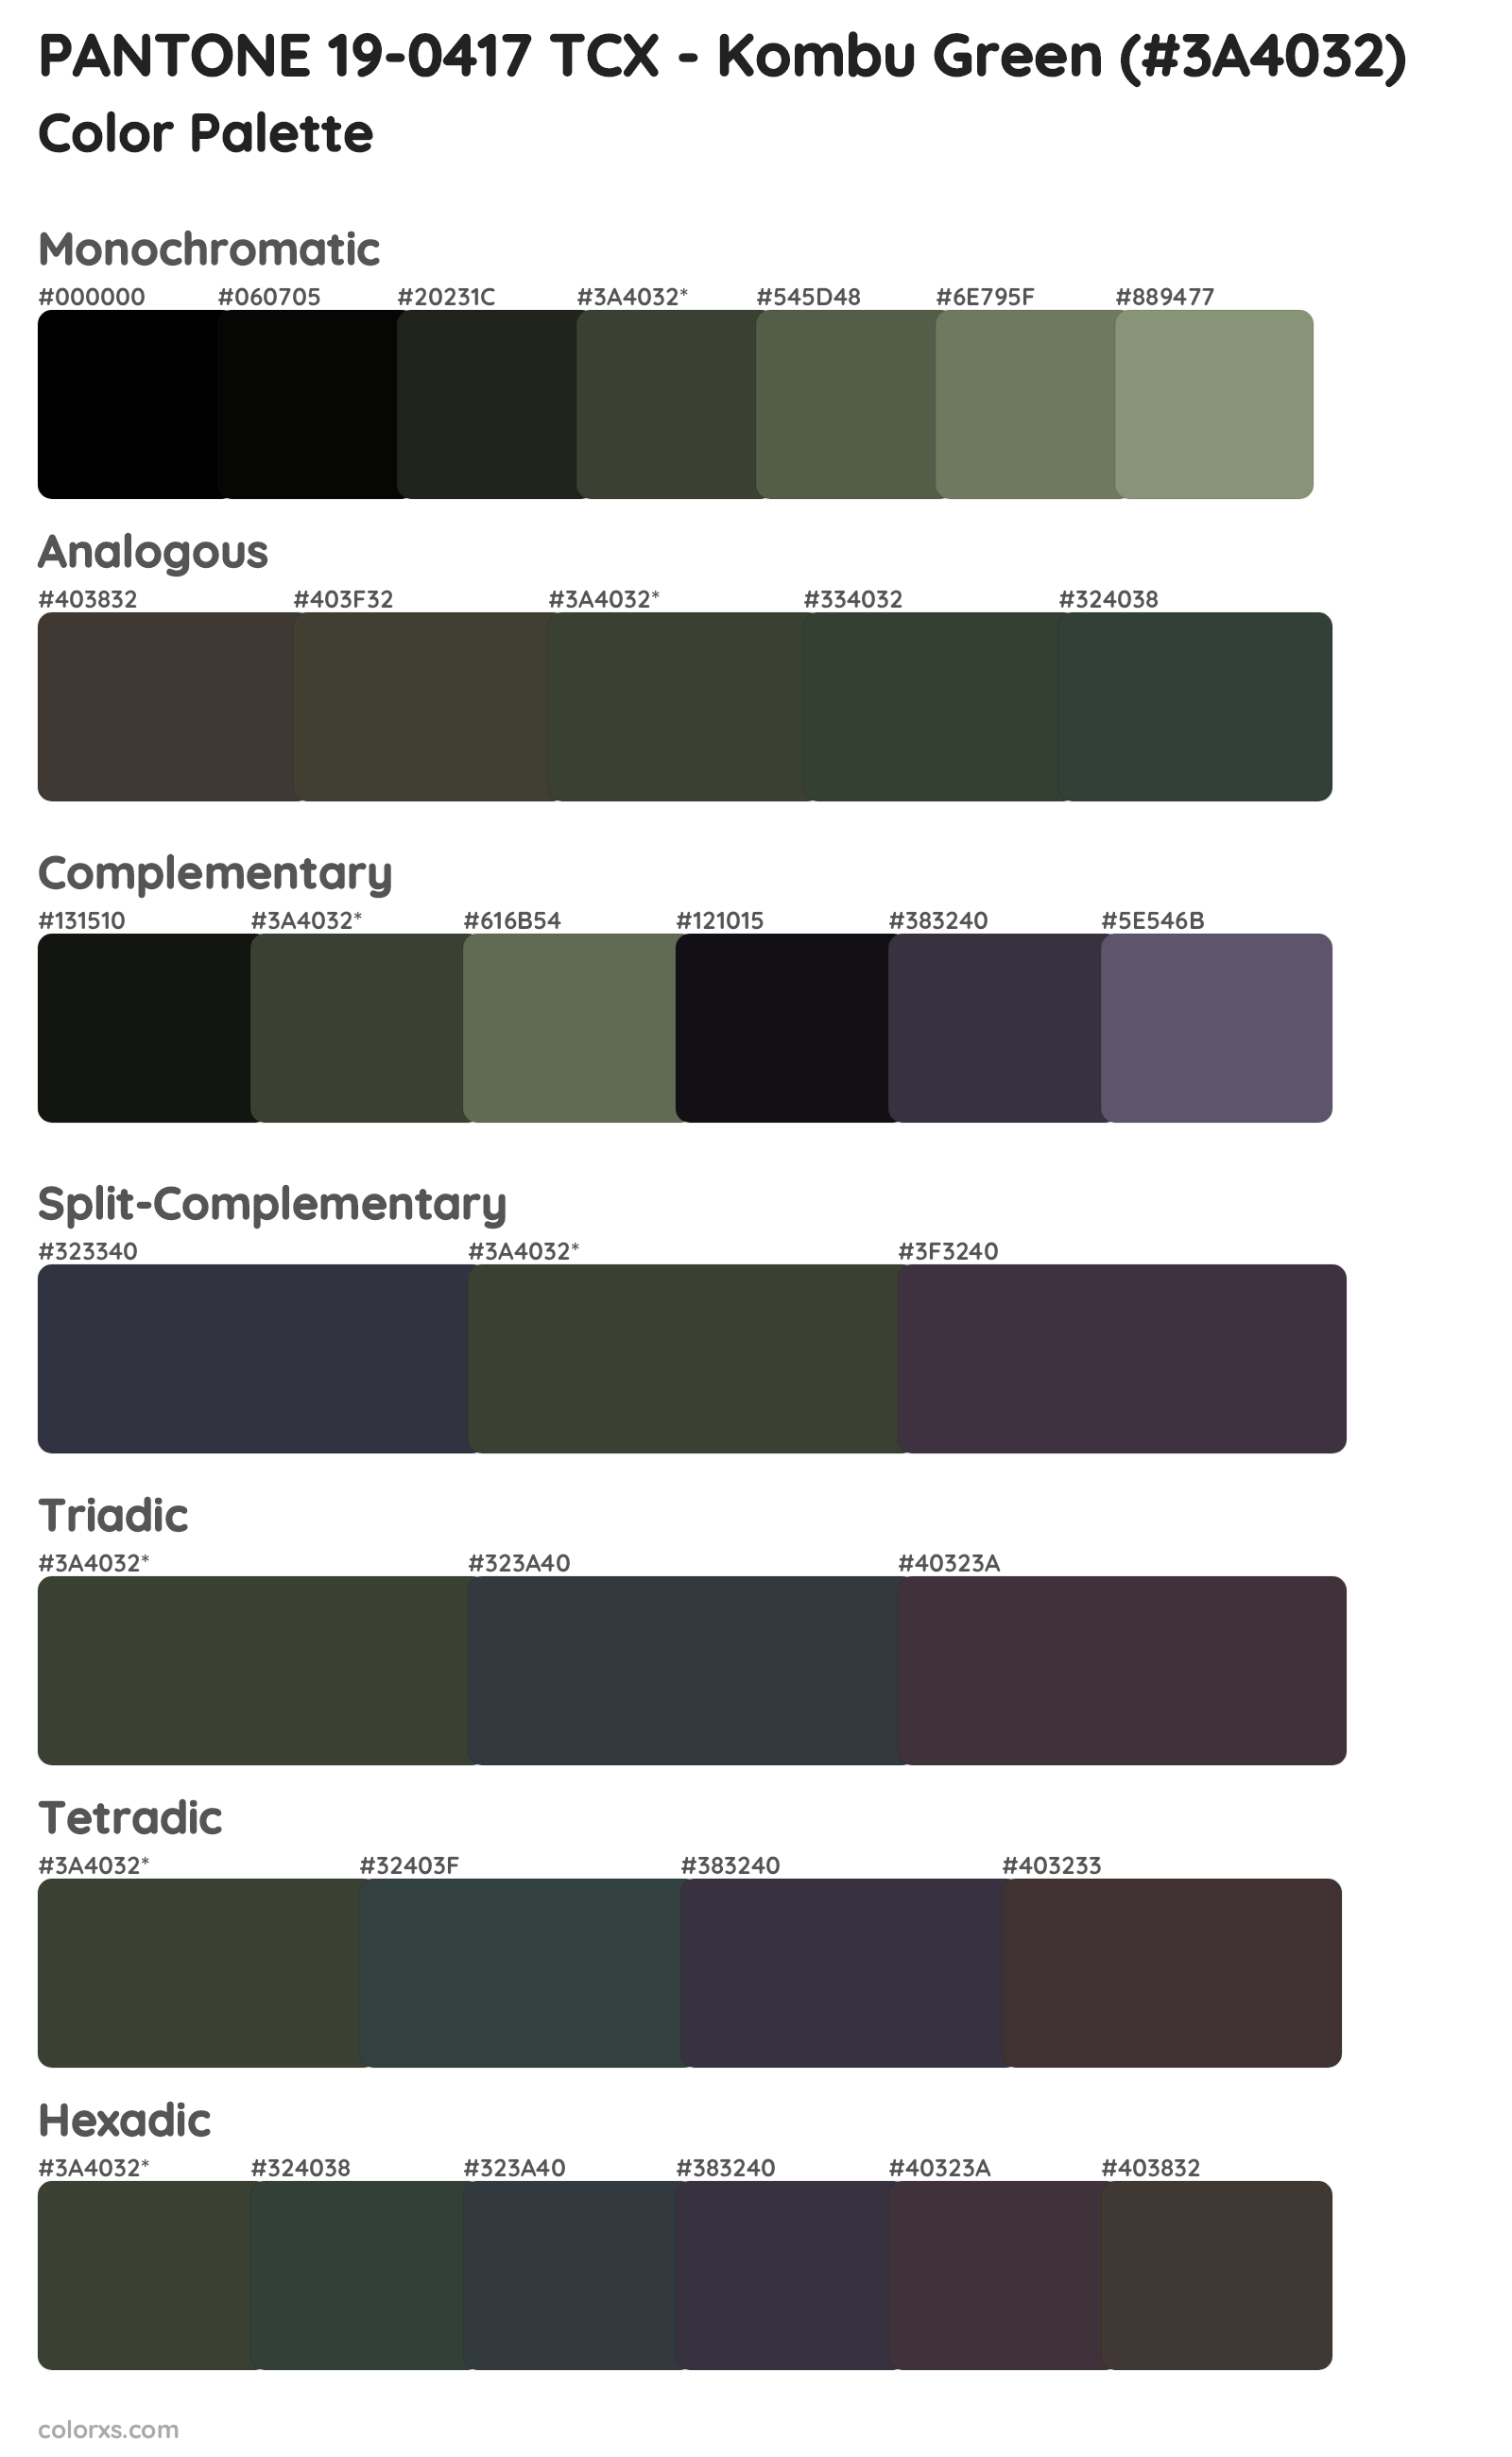 PANTONE 19-0417 TCX - Kombu Green Color Scheme Palettes